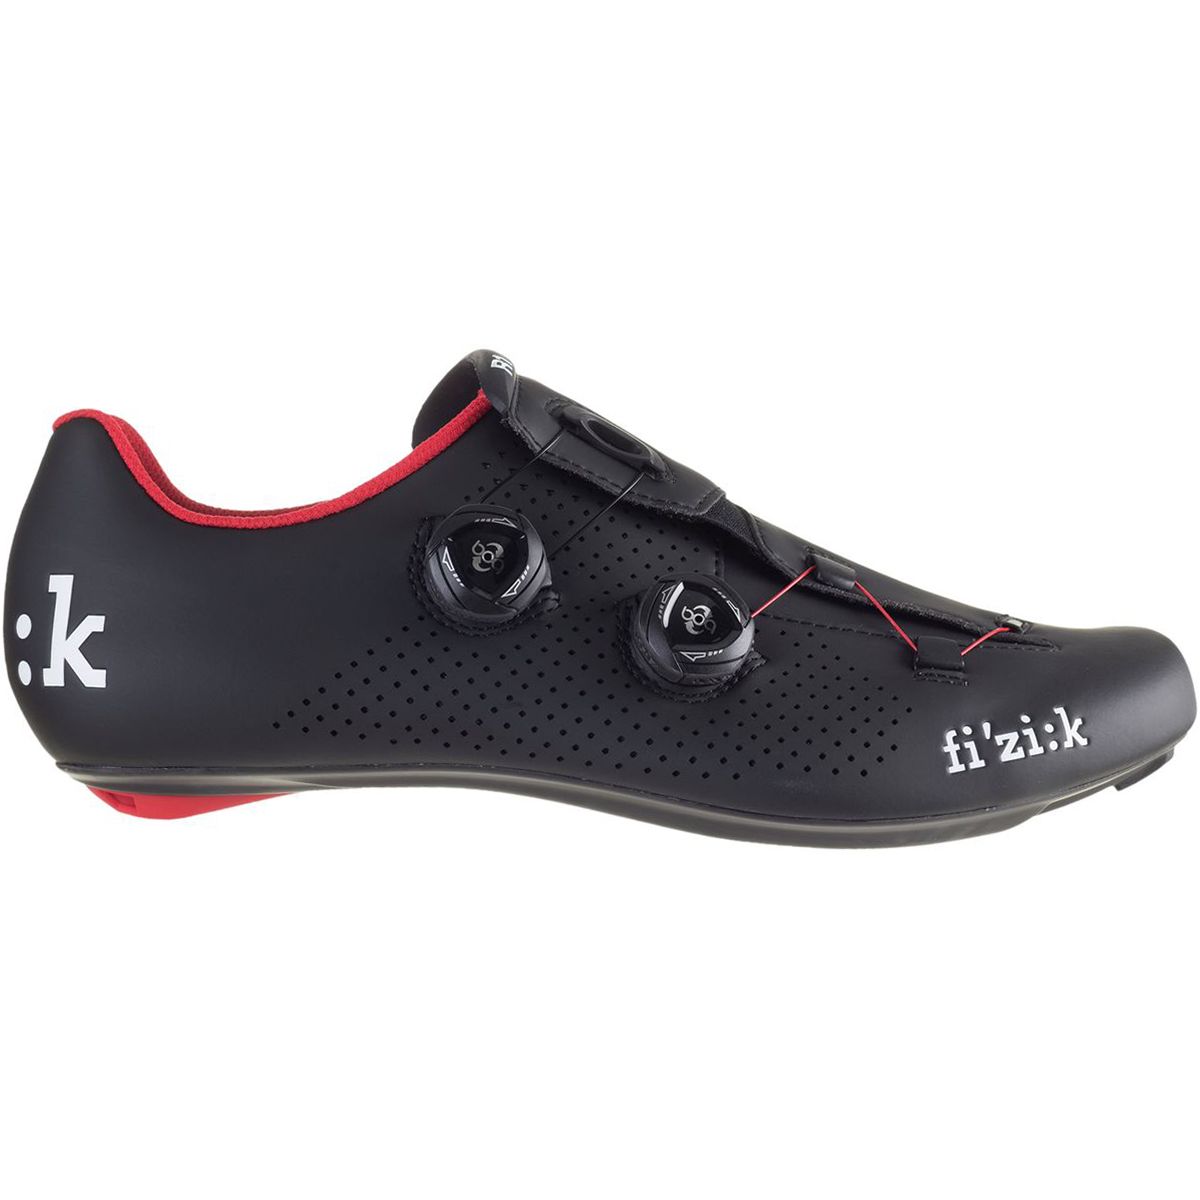 Fi'zi:k R1B Uomo Boa Cycling Shoe - Men's